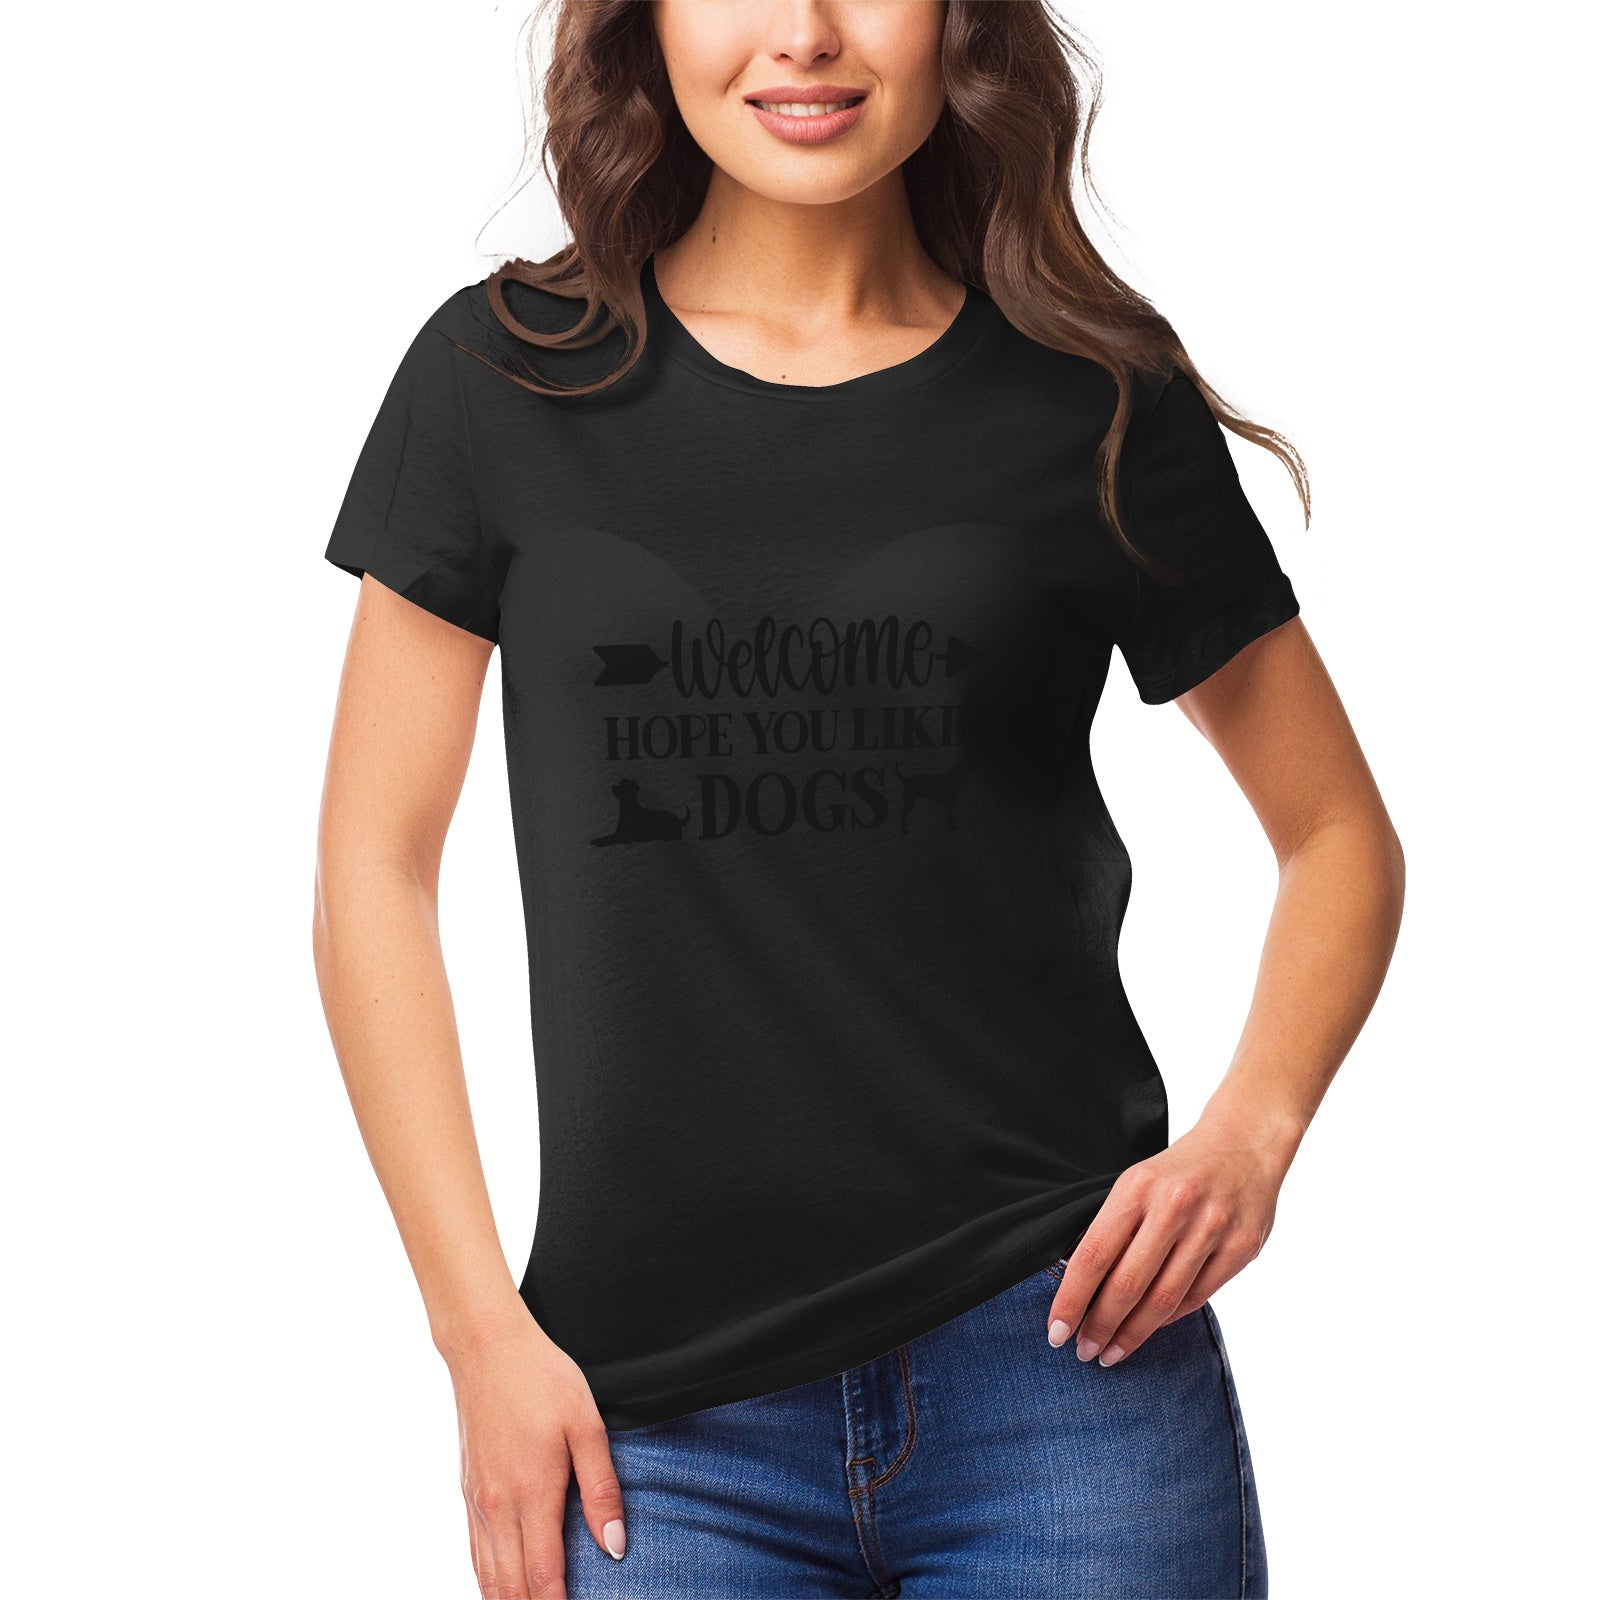 Fantasy 2 Women's Ultrasoft Pima Cotton T‑shirt - DromedarShop.com Online Boutique